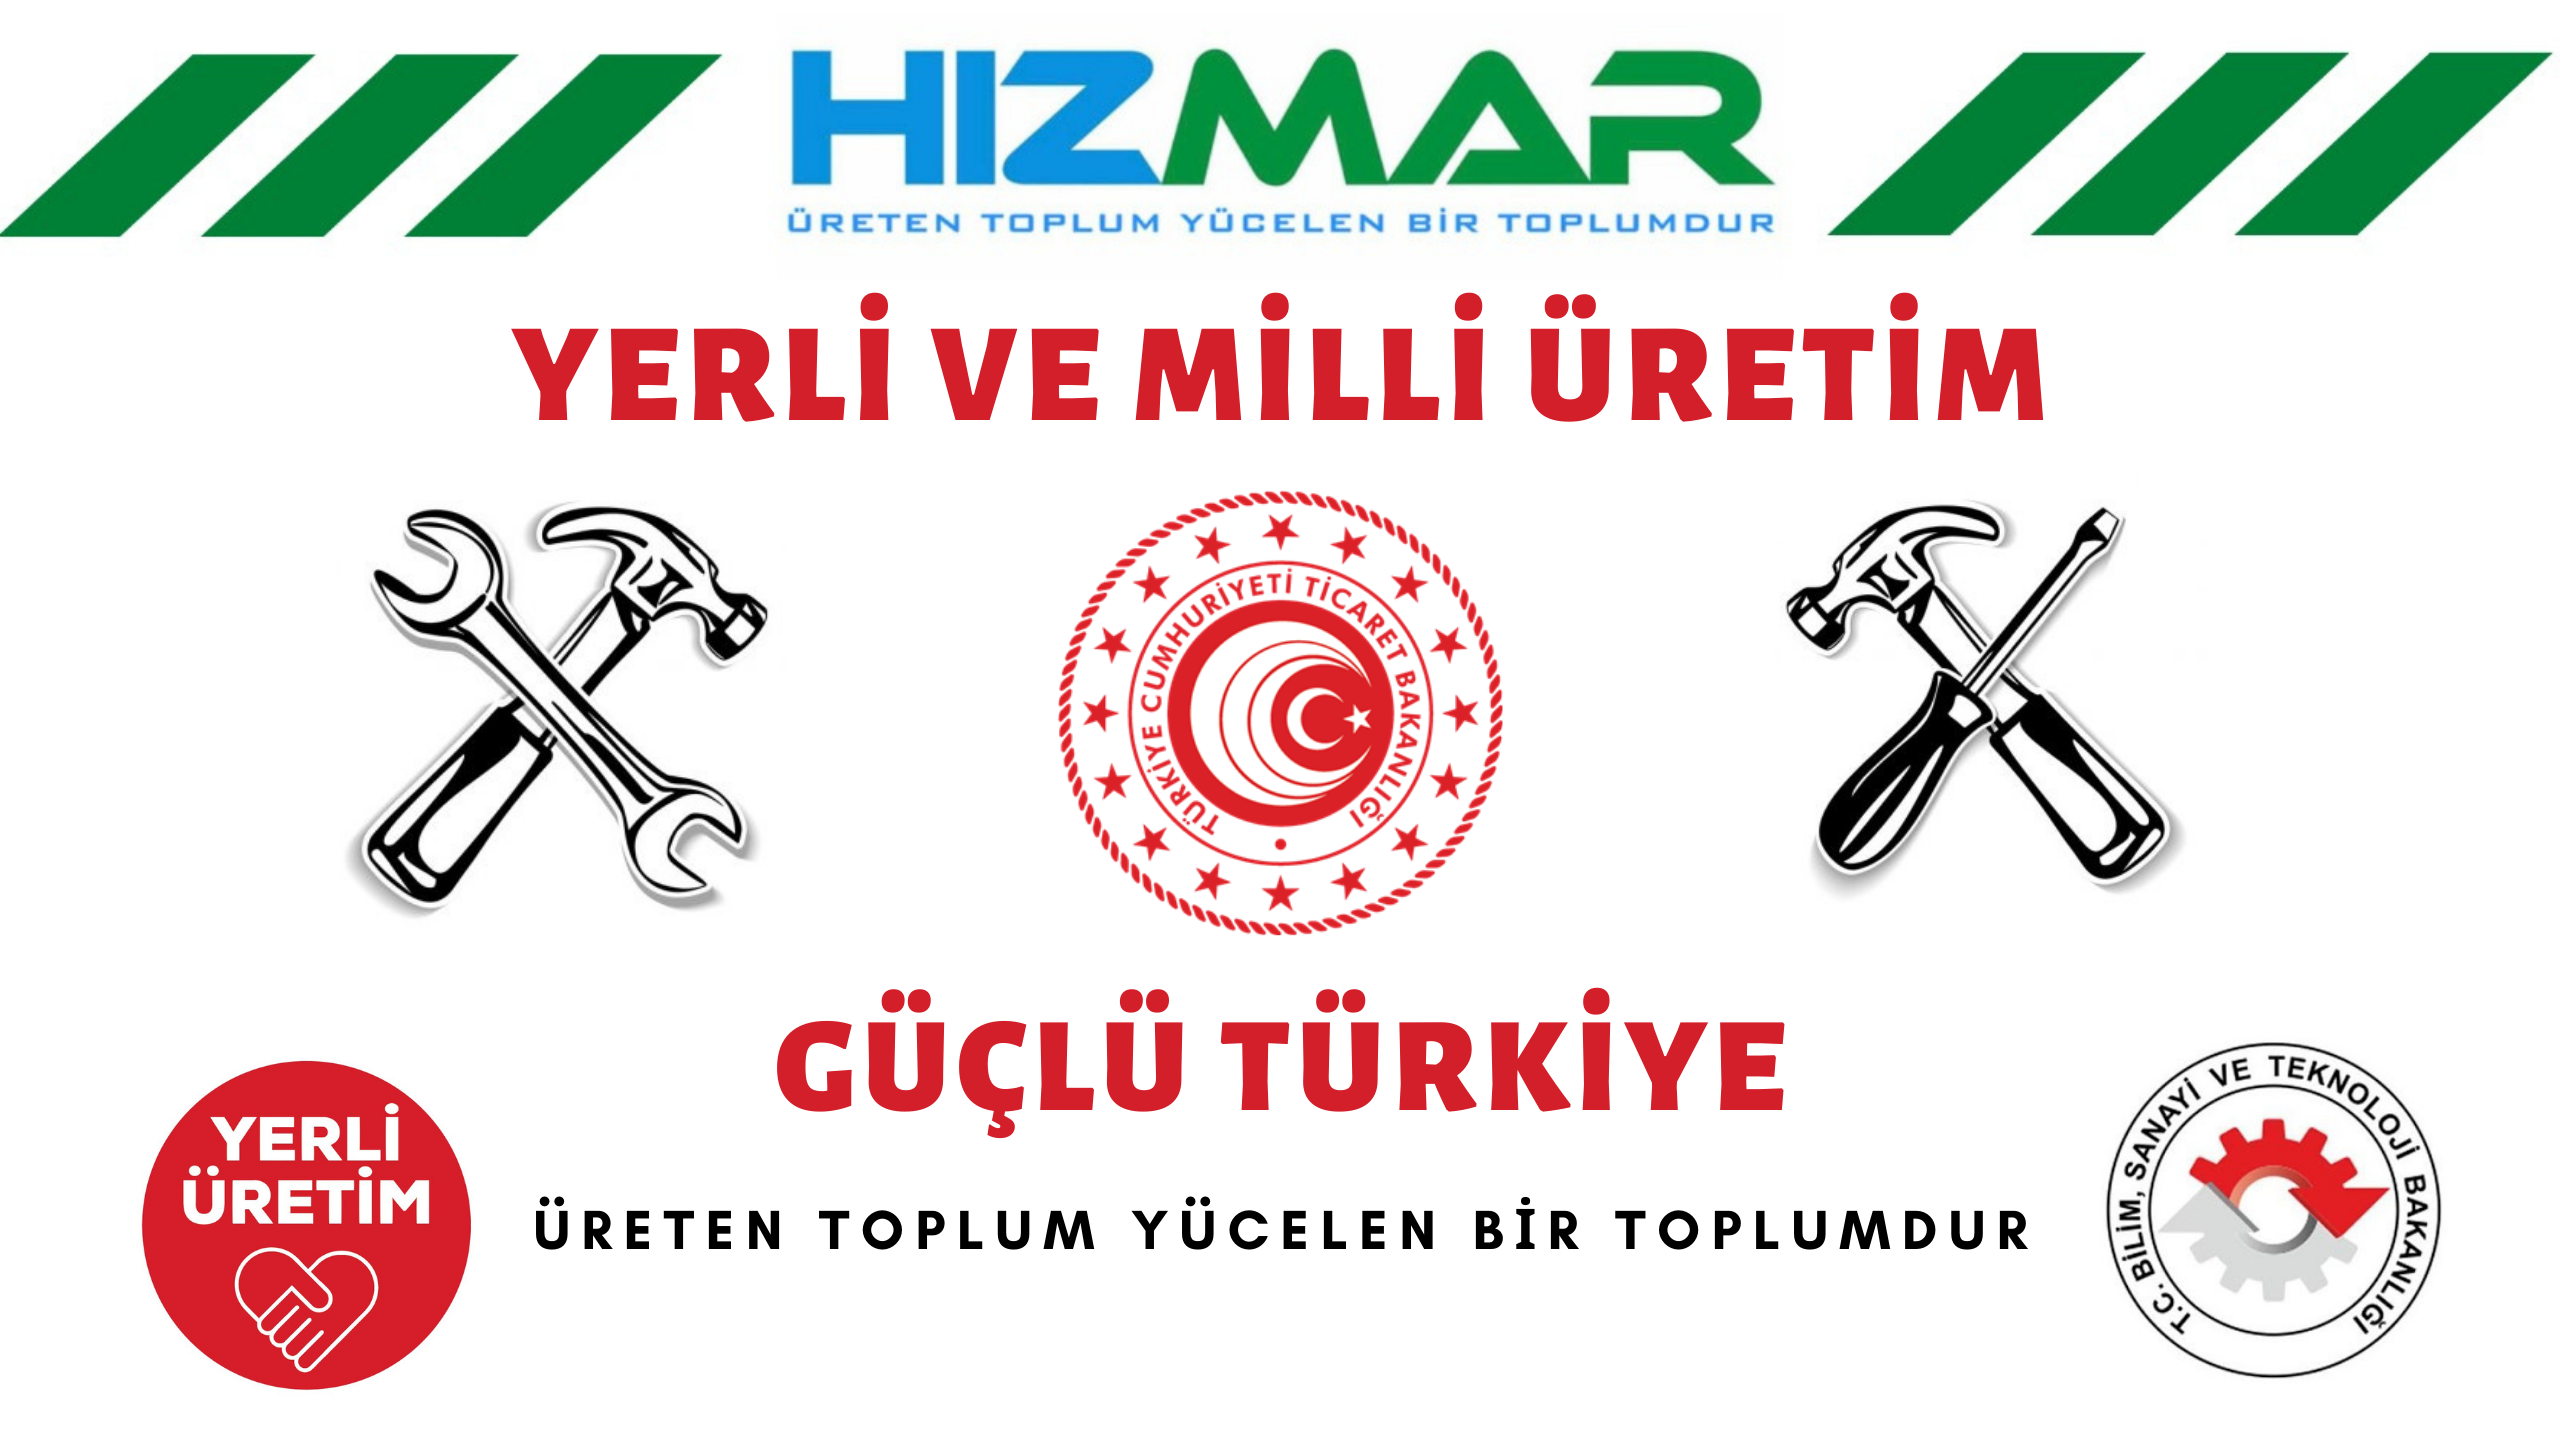 Hızmar A.Ş. Yerli Üretim Güçlü Türkiye